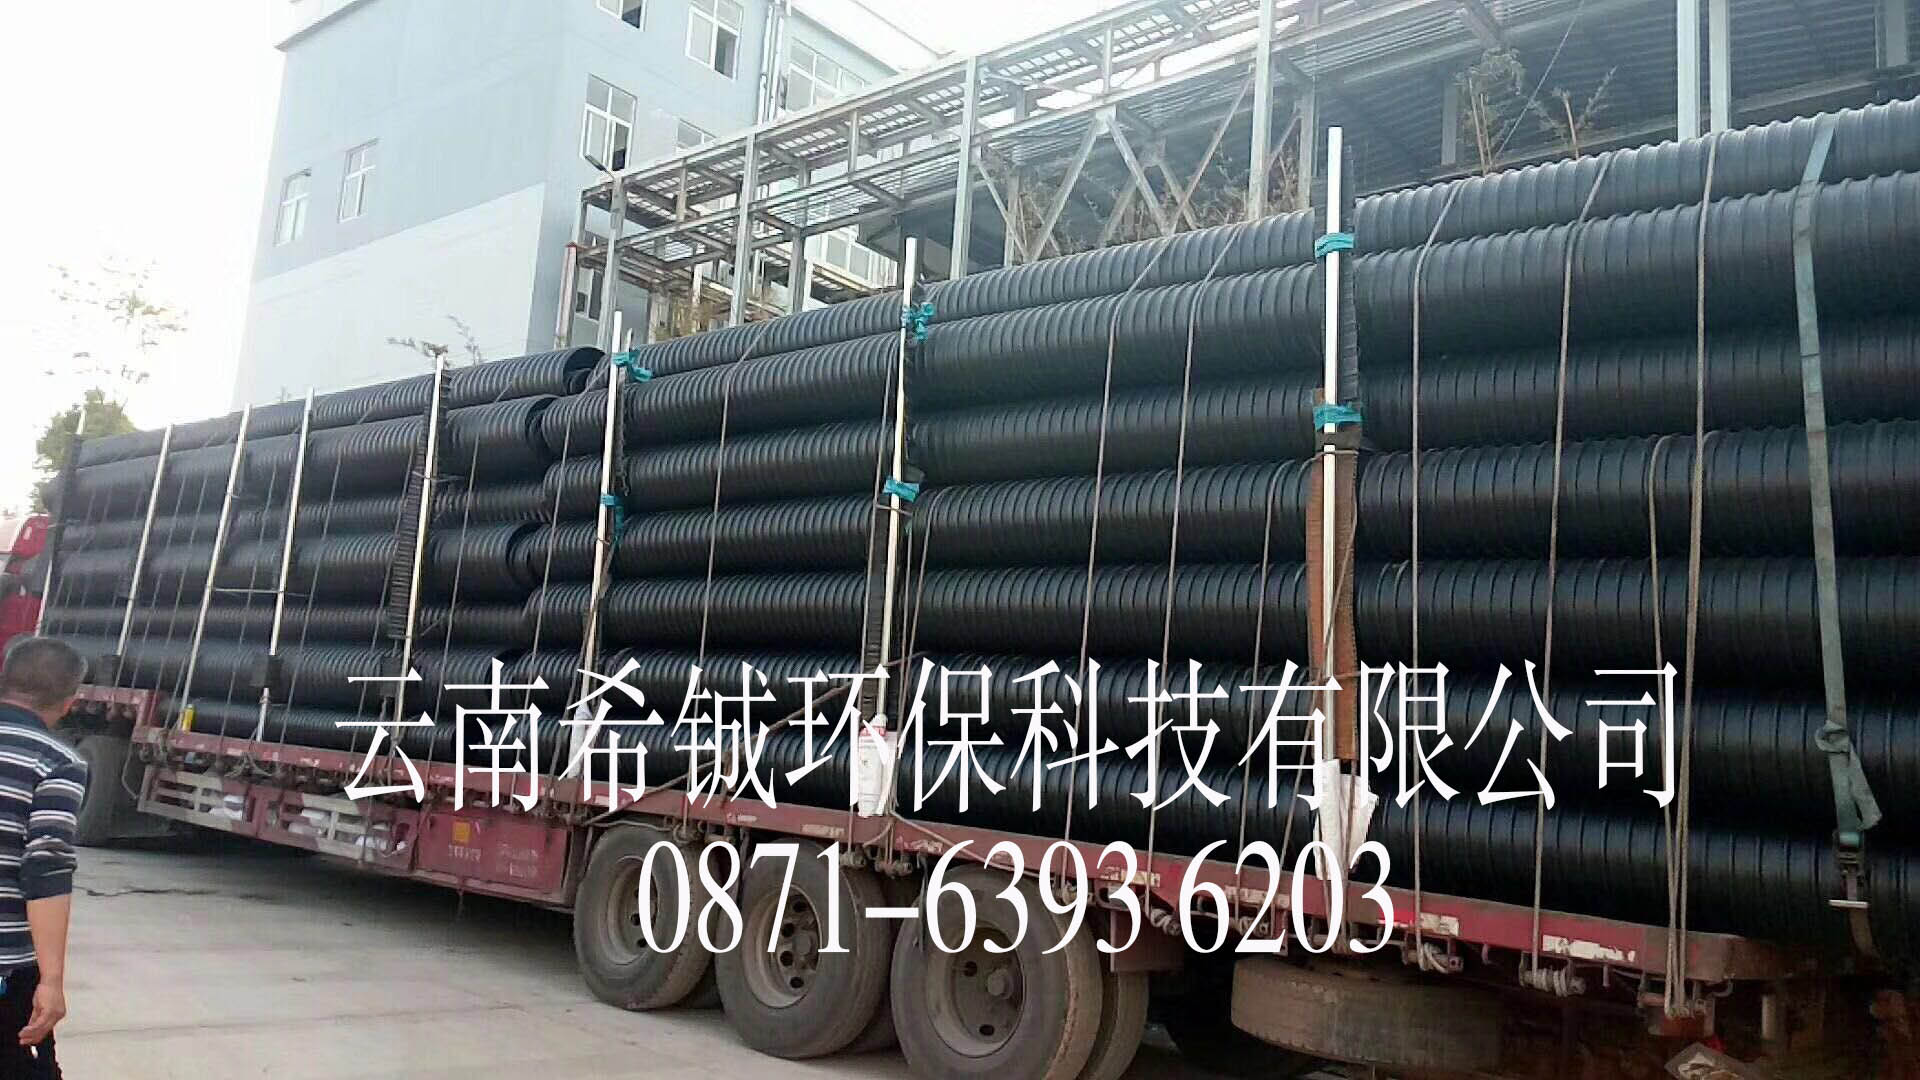 海南省安定县污水处理工程